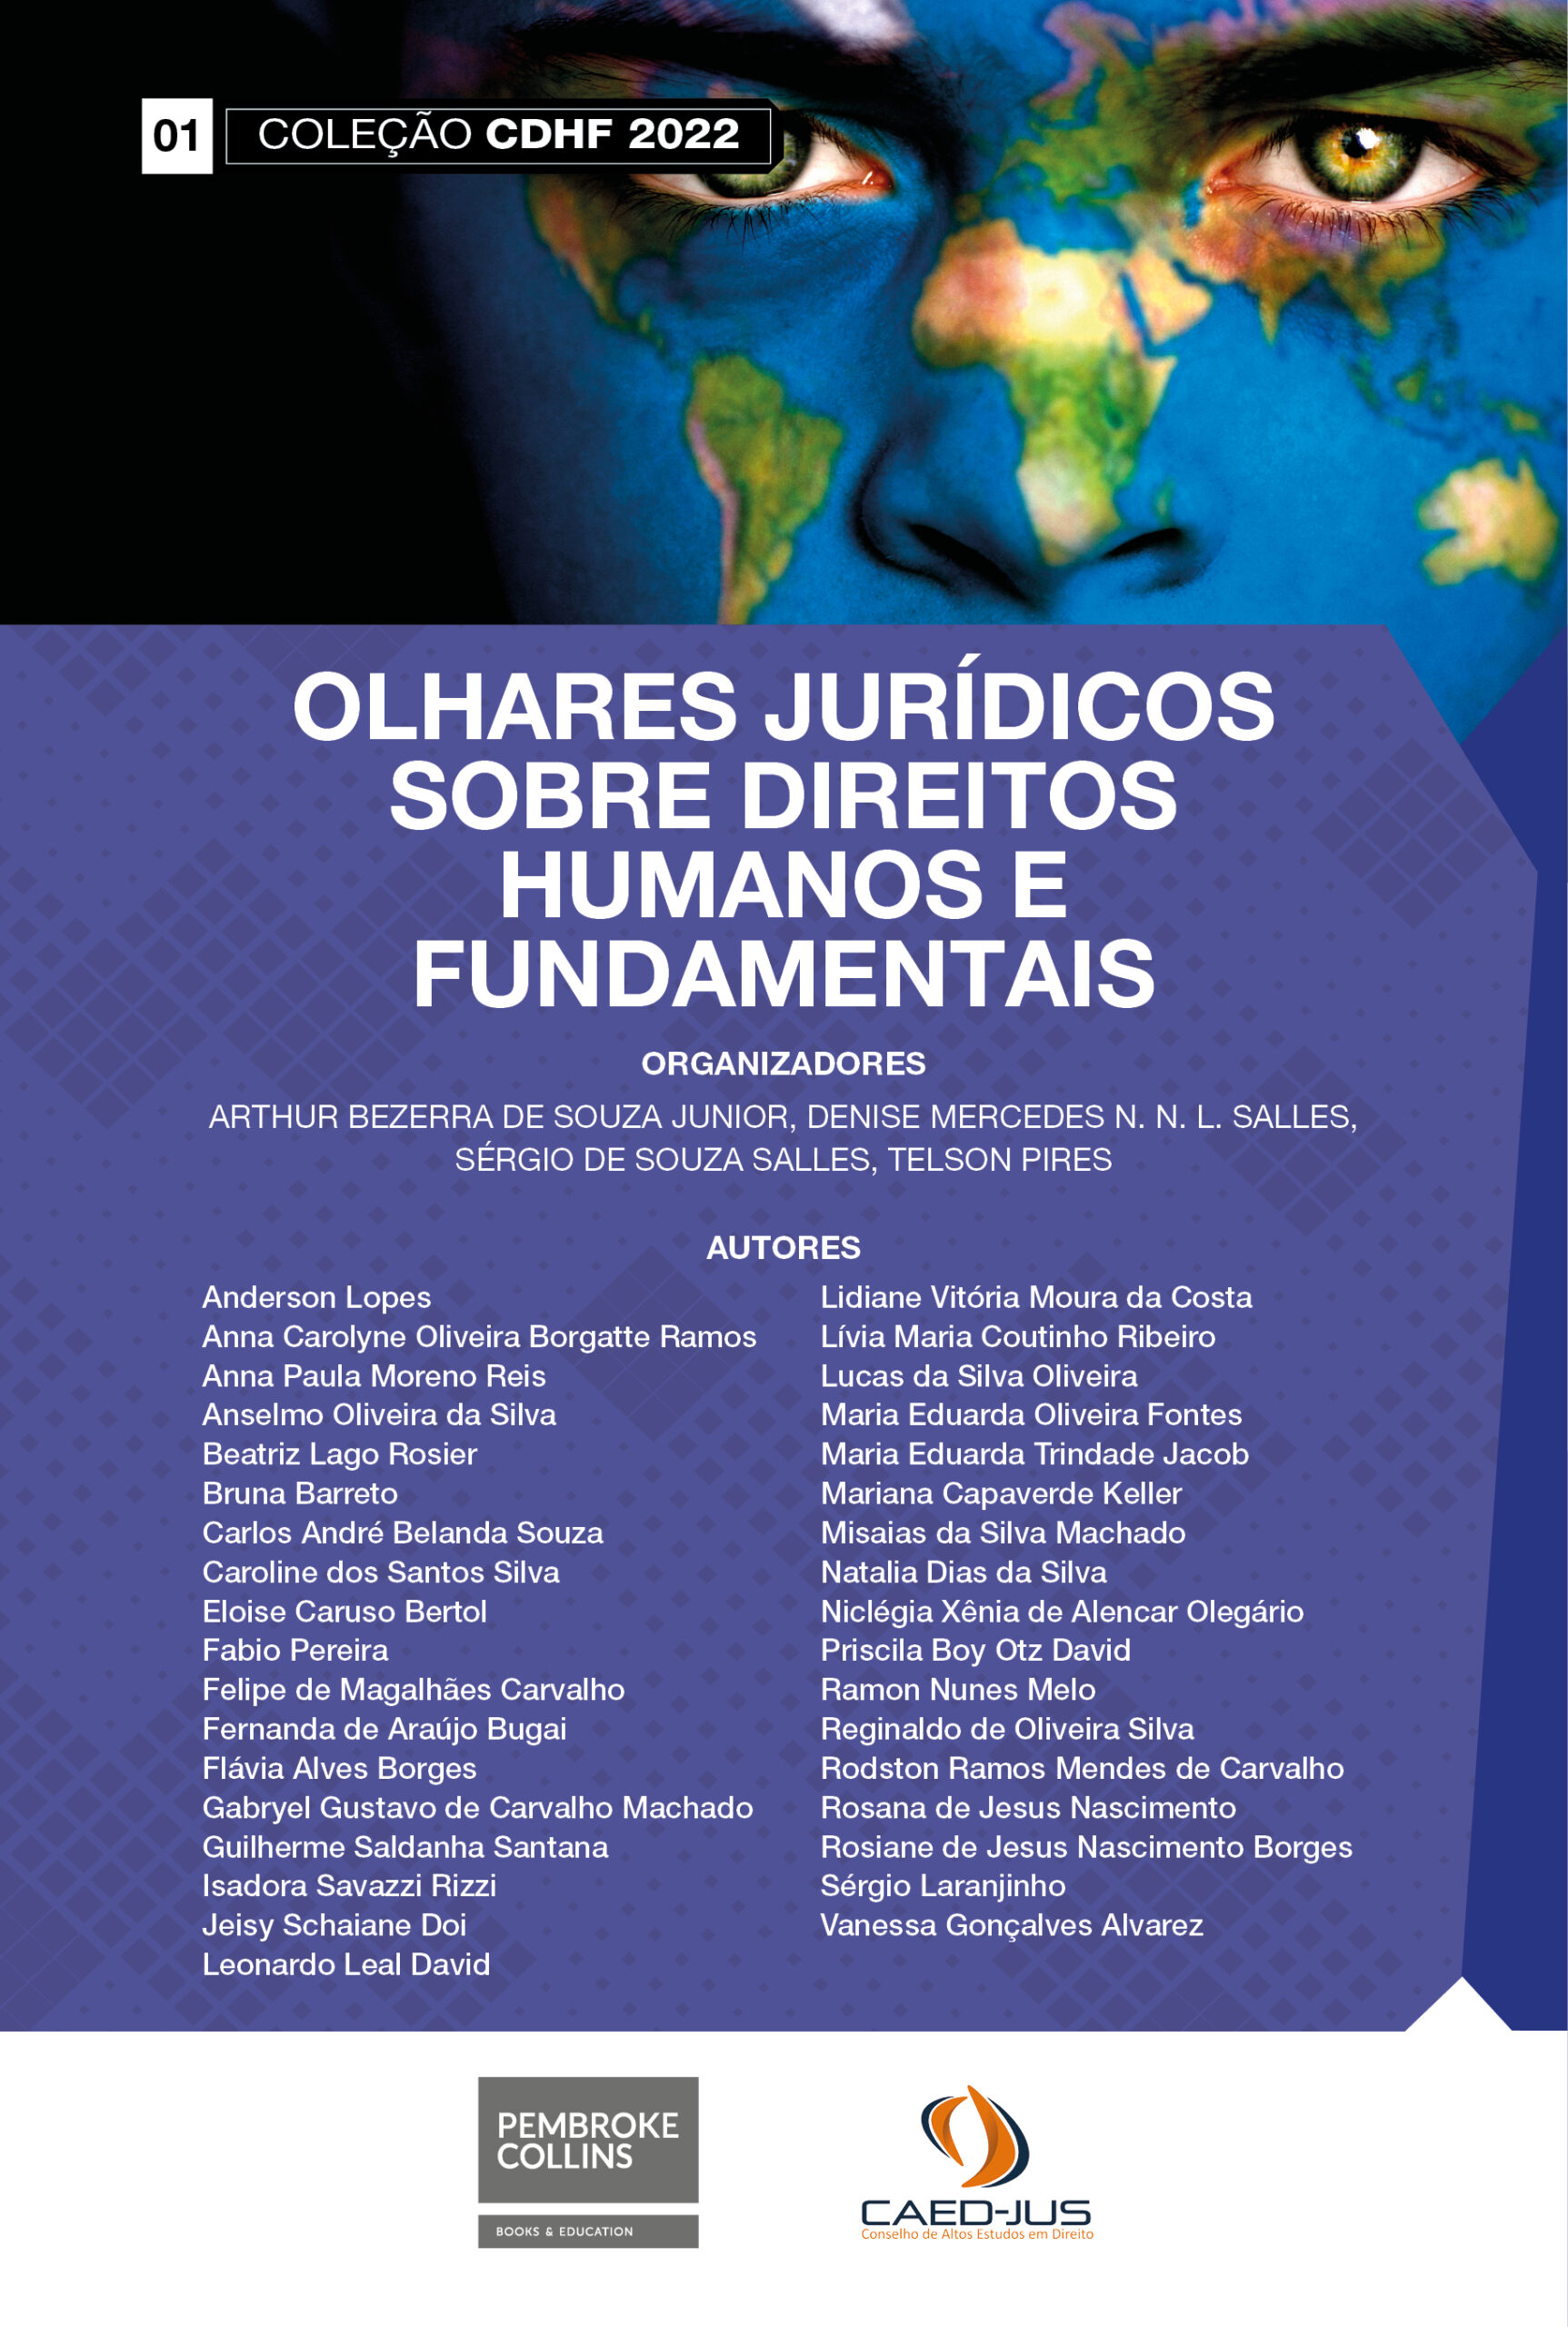 01-CAPA-CDHF2022-OLHARES-JURIDICOS-SOBRE-DIREITOS-HUMANOS-E-FUNDAMENTAIS